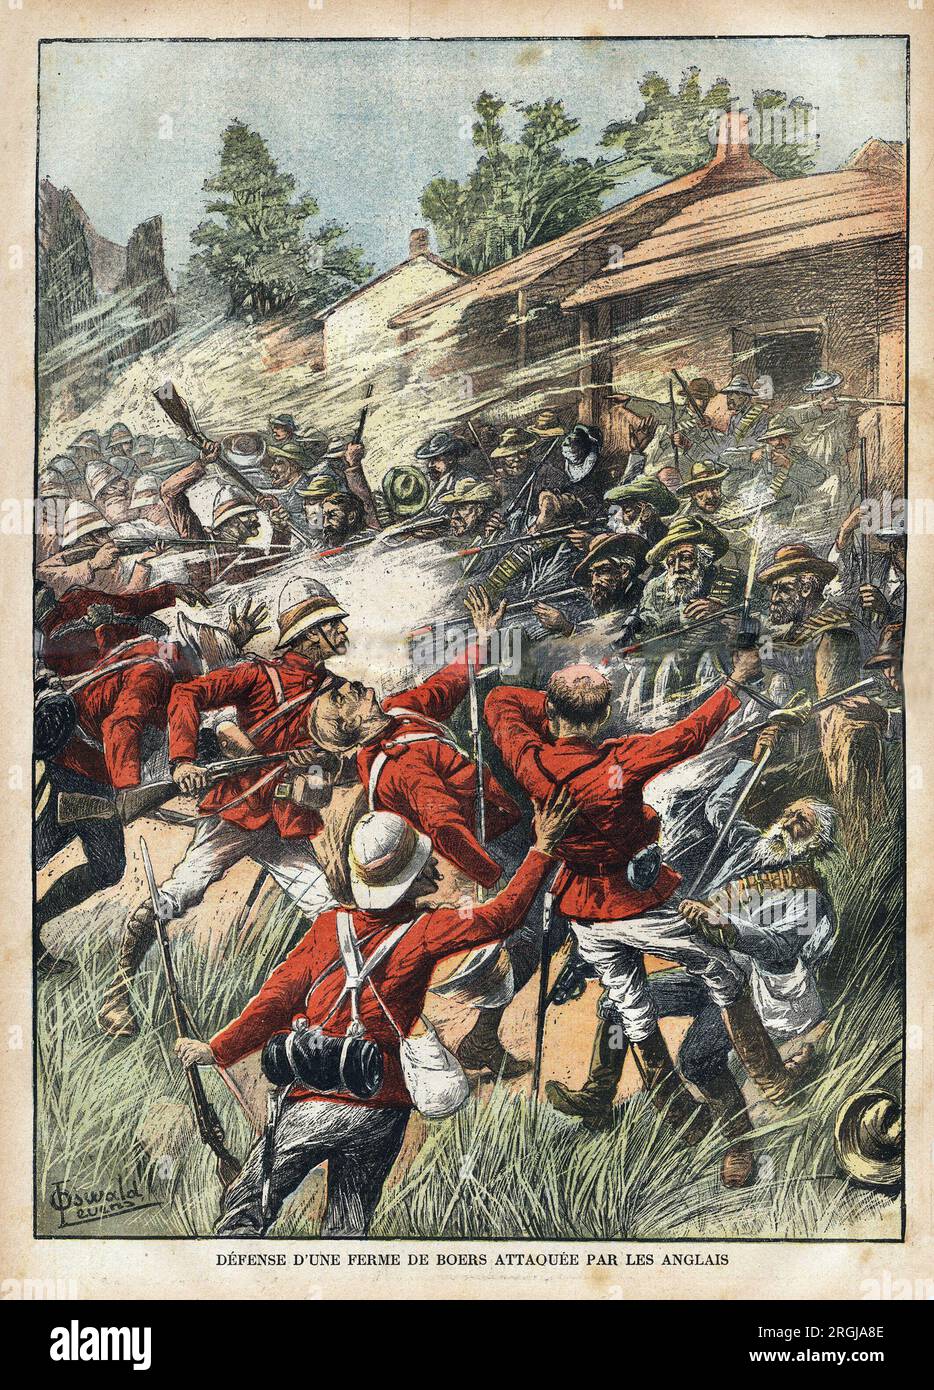 La défense d'une ferme de Boers attaquée par les troupes anglaises, pendant la guerre au Transvaal (Afrique du Sud). Gravure dans 'le pelerin' 18021900. Banque D'Images